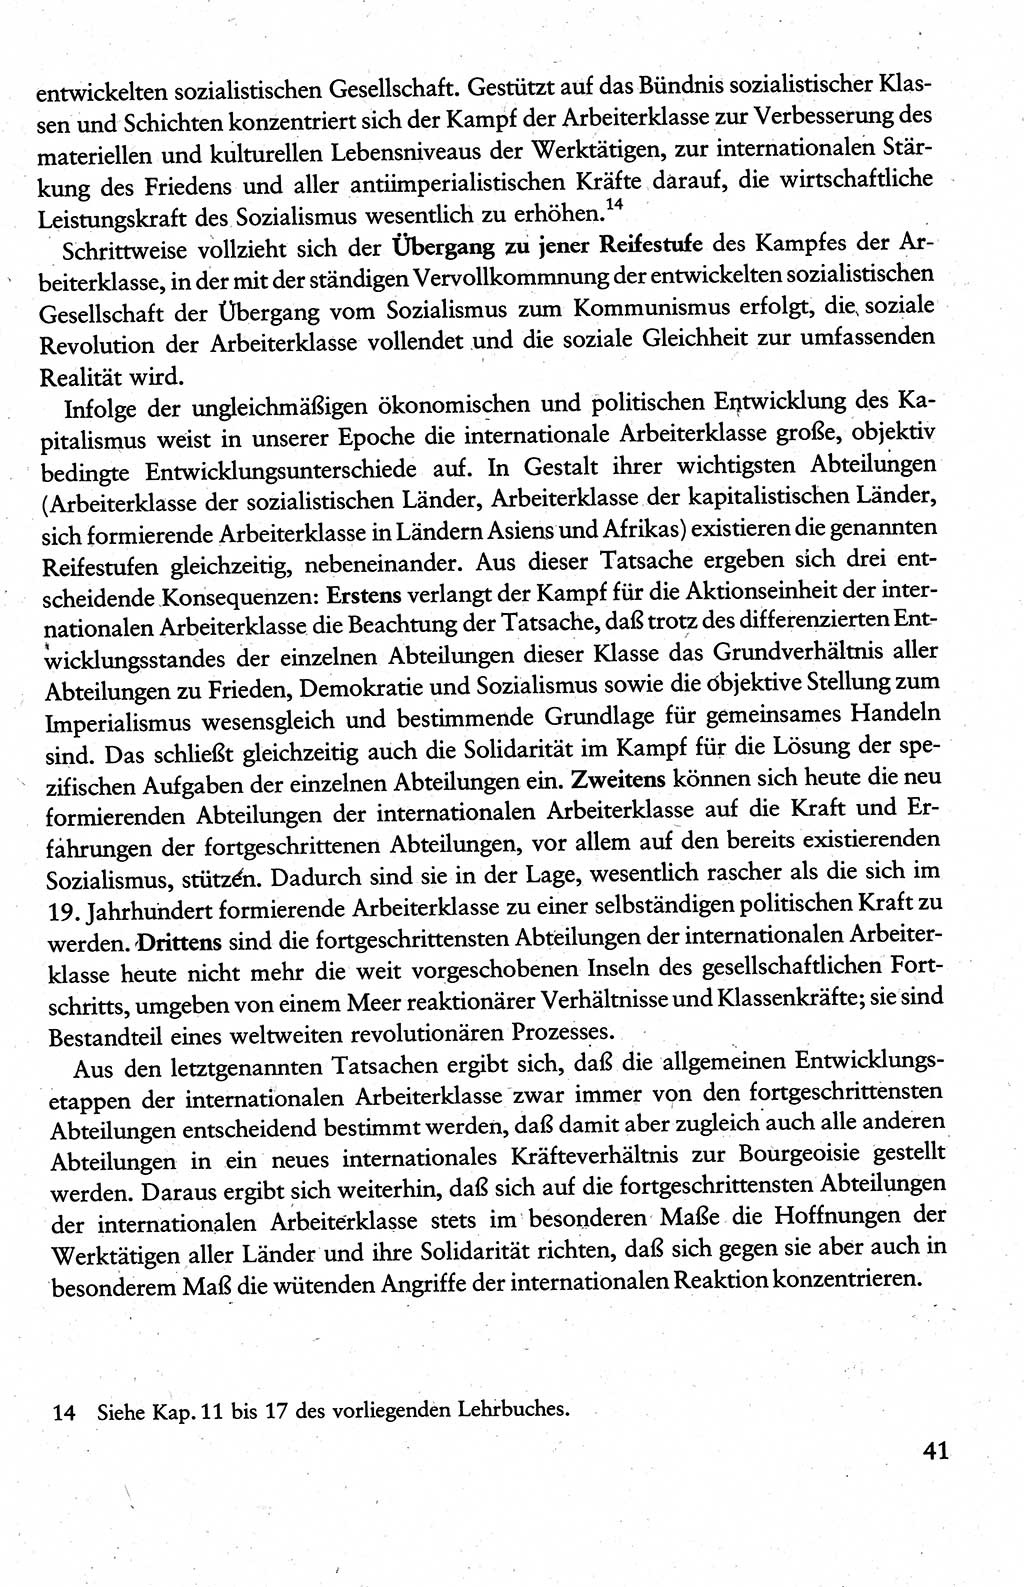 Wissenschaftlicher Kommunismus [Deutsche Demokratische Republik (DDR)], Lehrbuch für das marxistisch-leninistische Grundlagenstudium 1983, Seite 41 (Wiss. Komm. DDR Lb. 1983, S. 41)